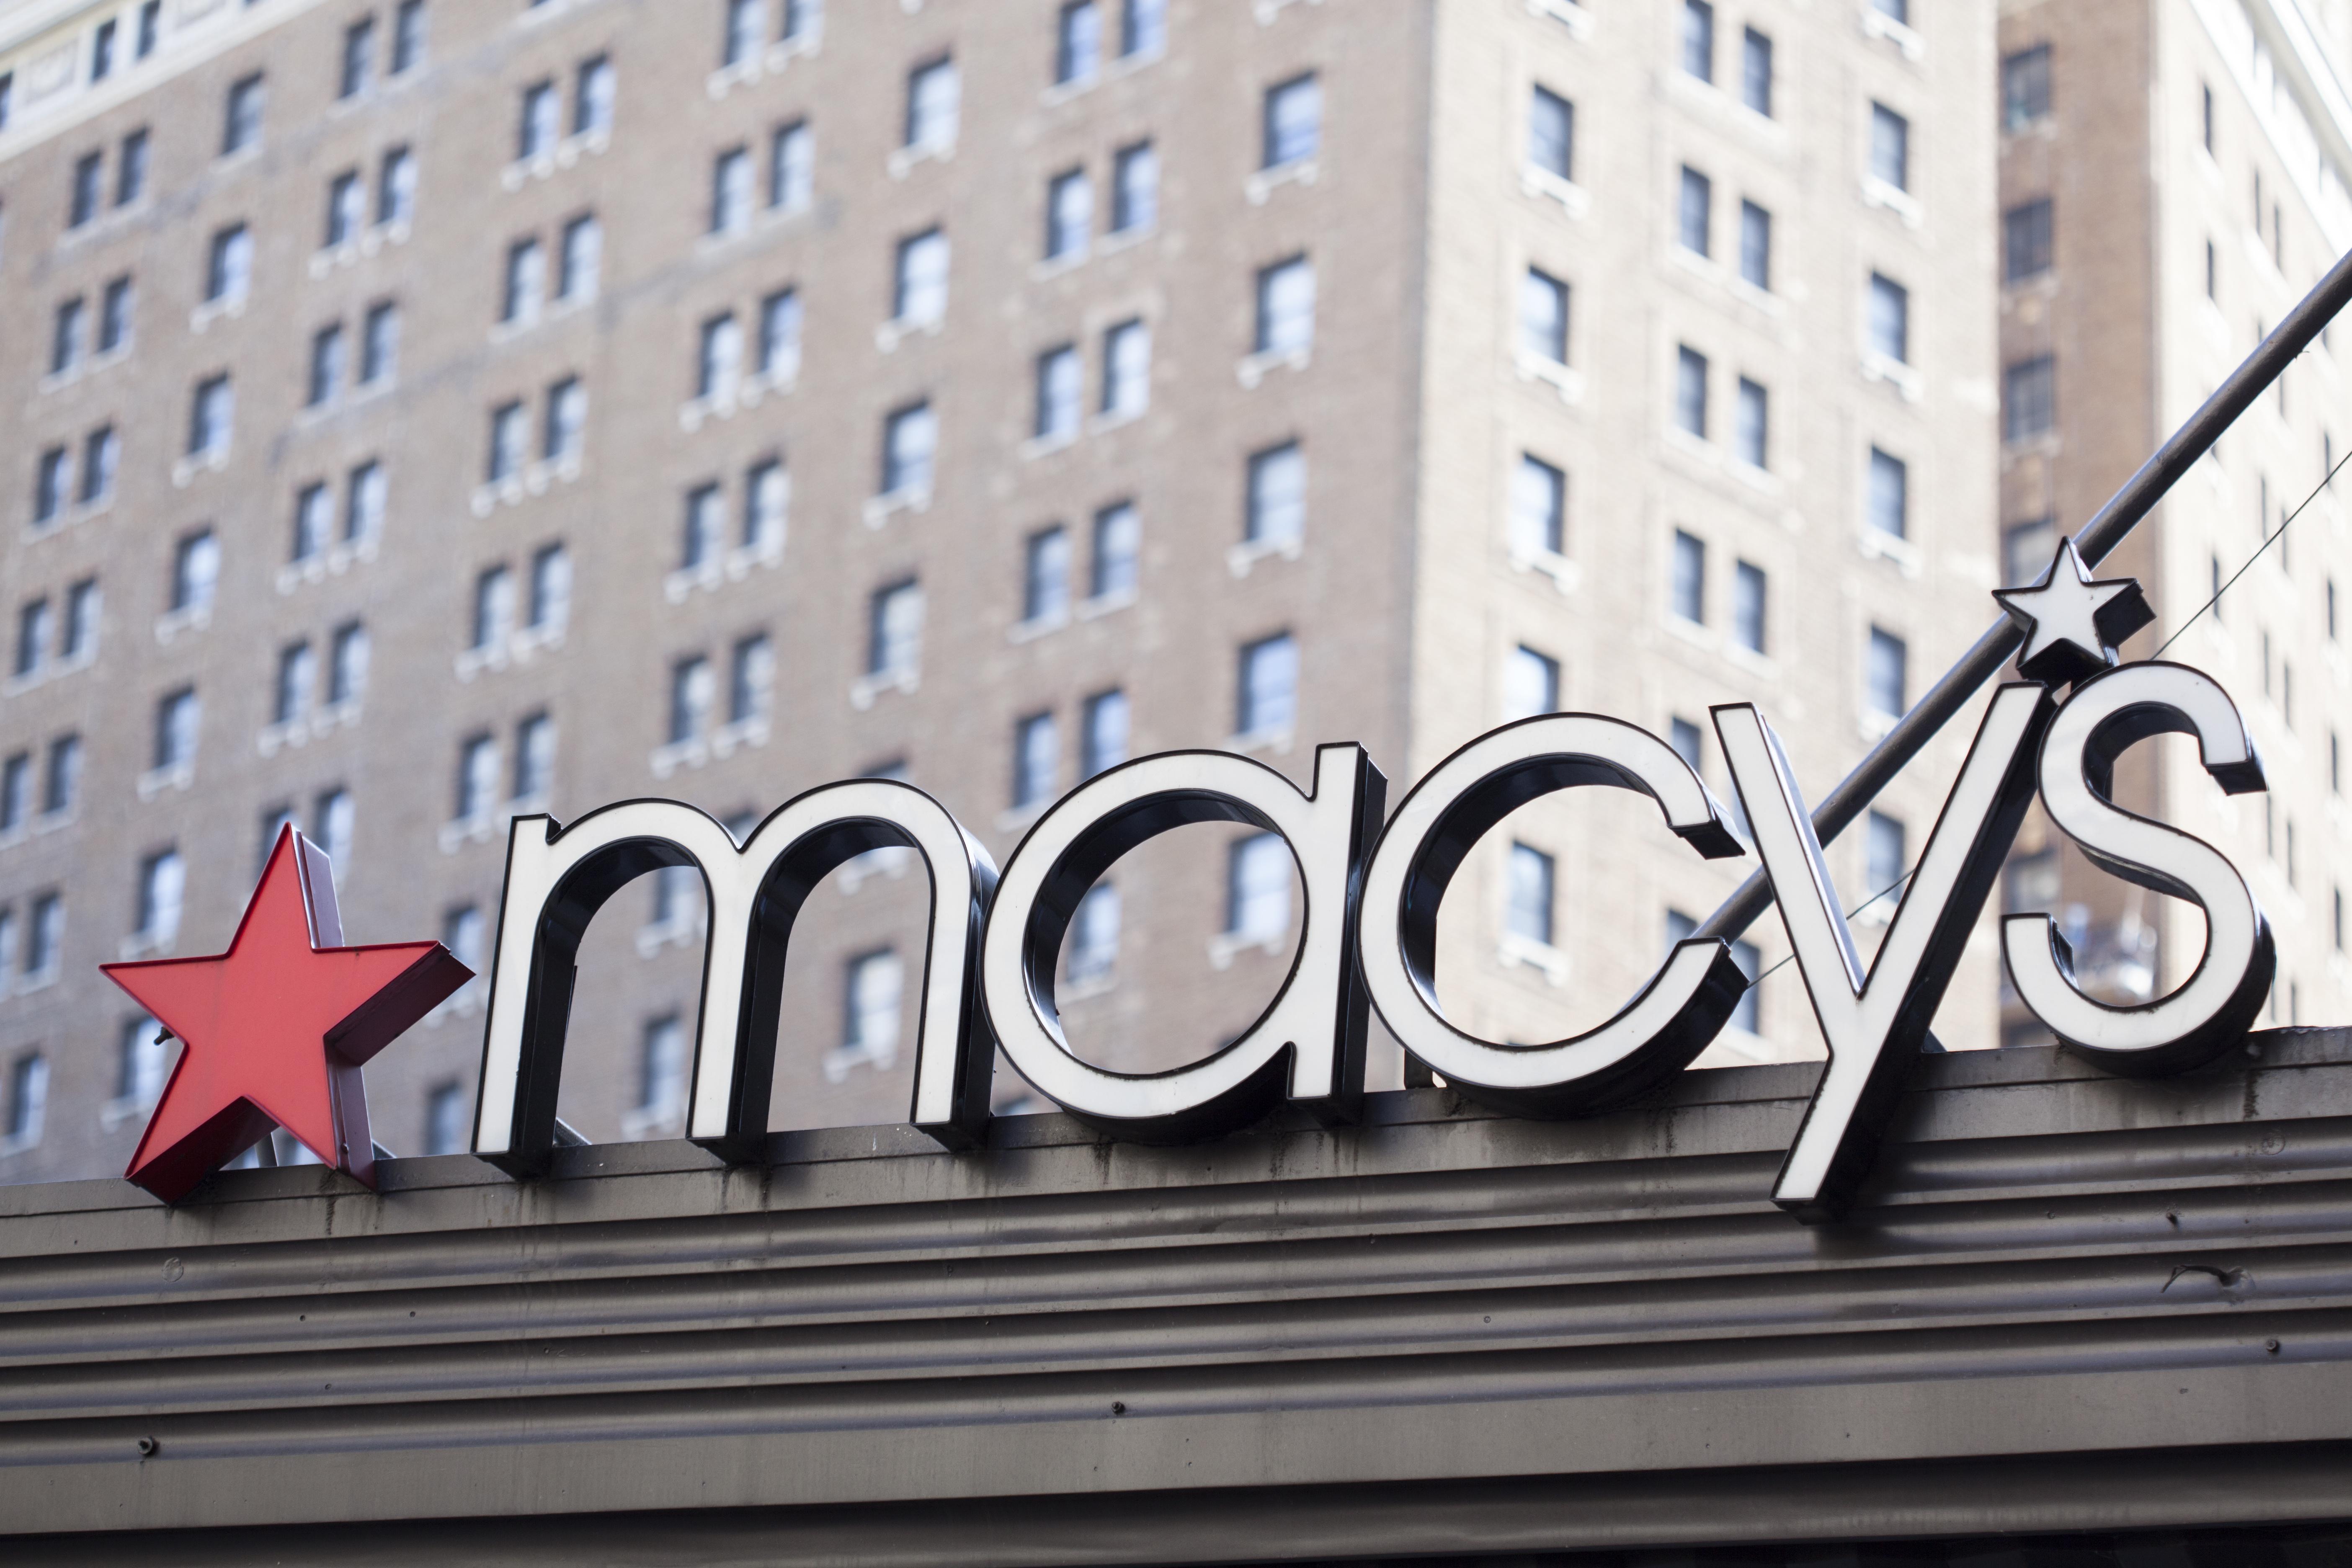 Macy’s Stock Falls after Earnings on Weak Outlook